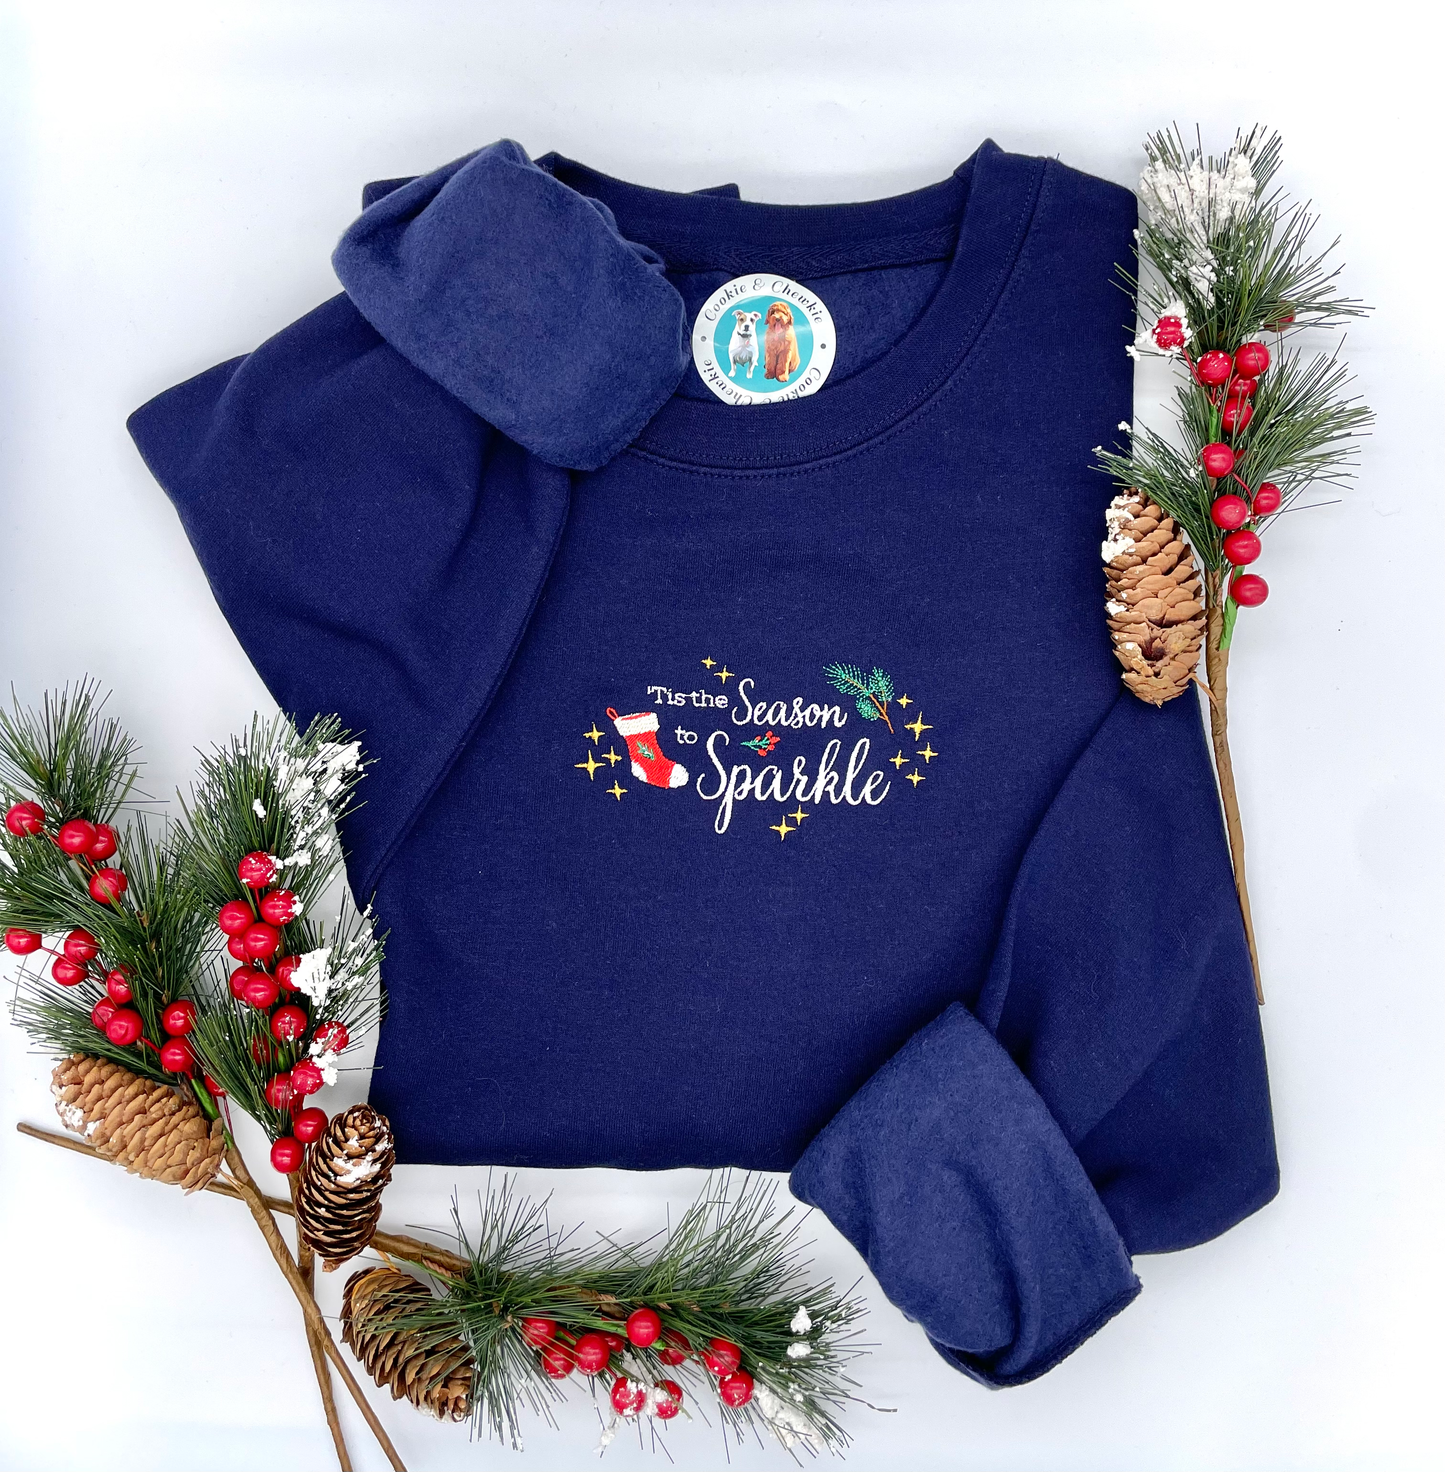 Embroidered Sweatshirt - 'Tis the Season to Sparkle'